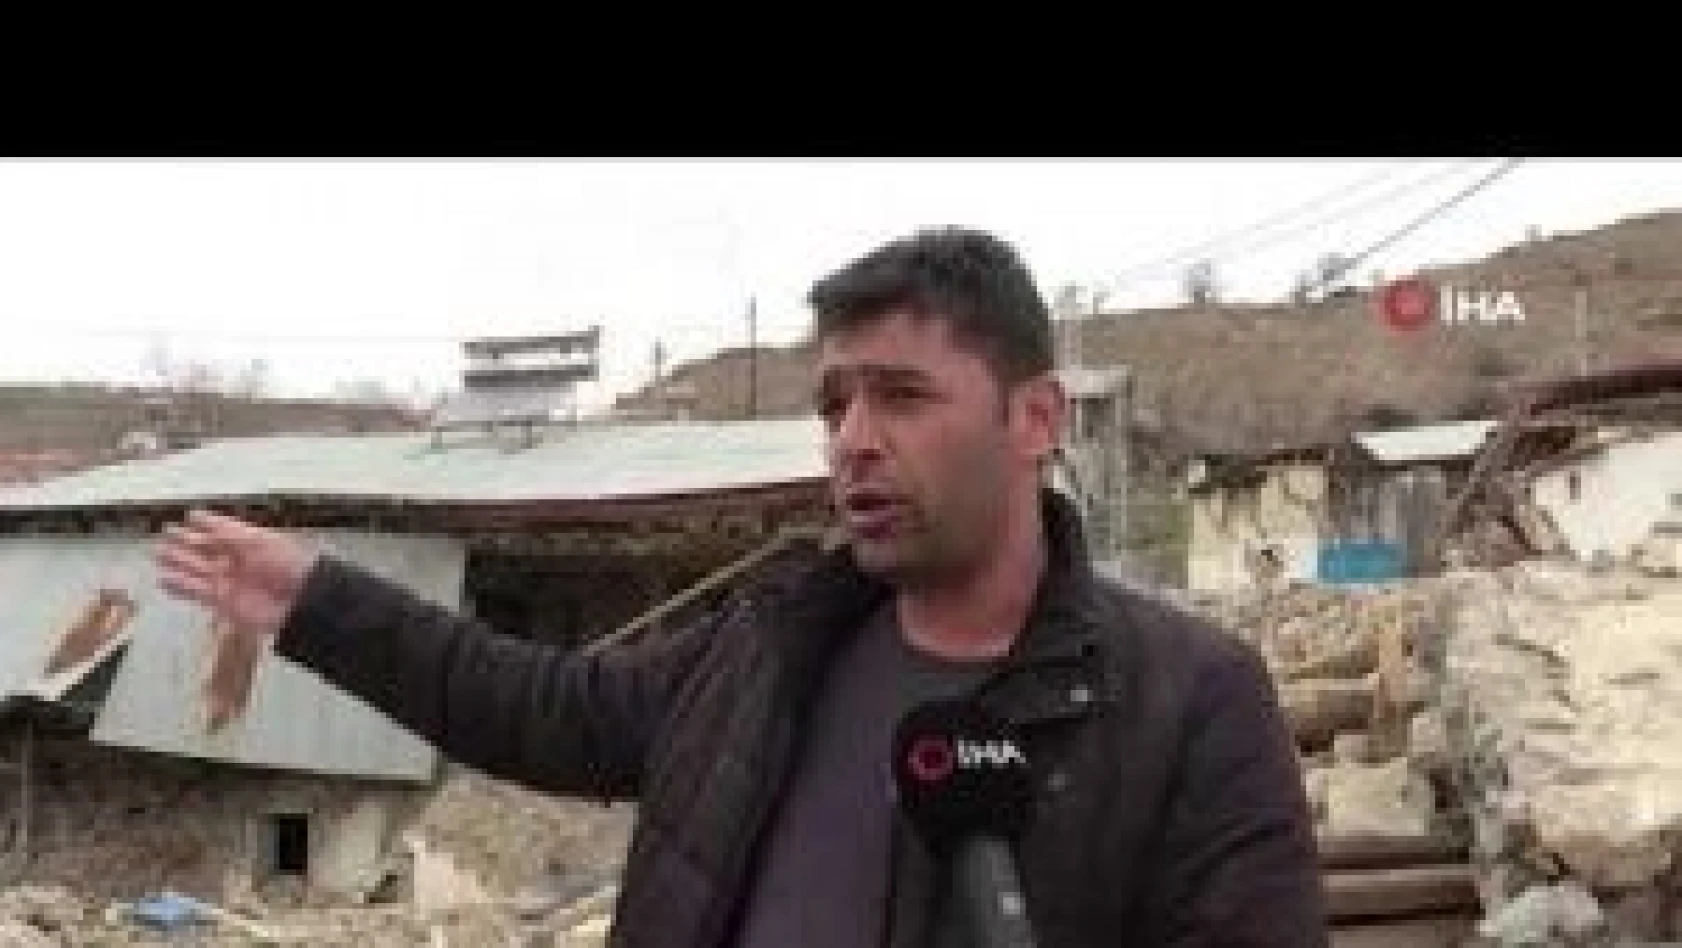 Depremde enkaza dönen ve 457 hanenin bulunduğu mahalle taşınmak istiyor